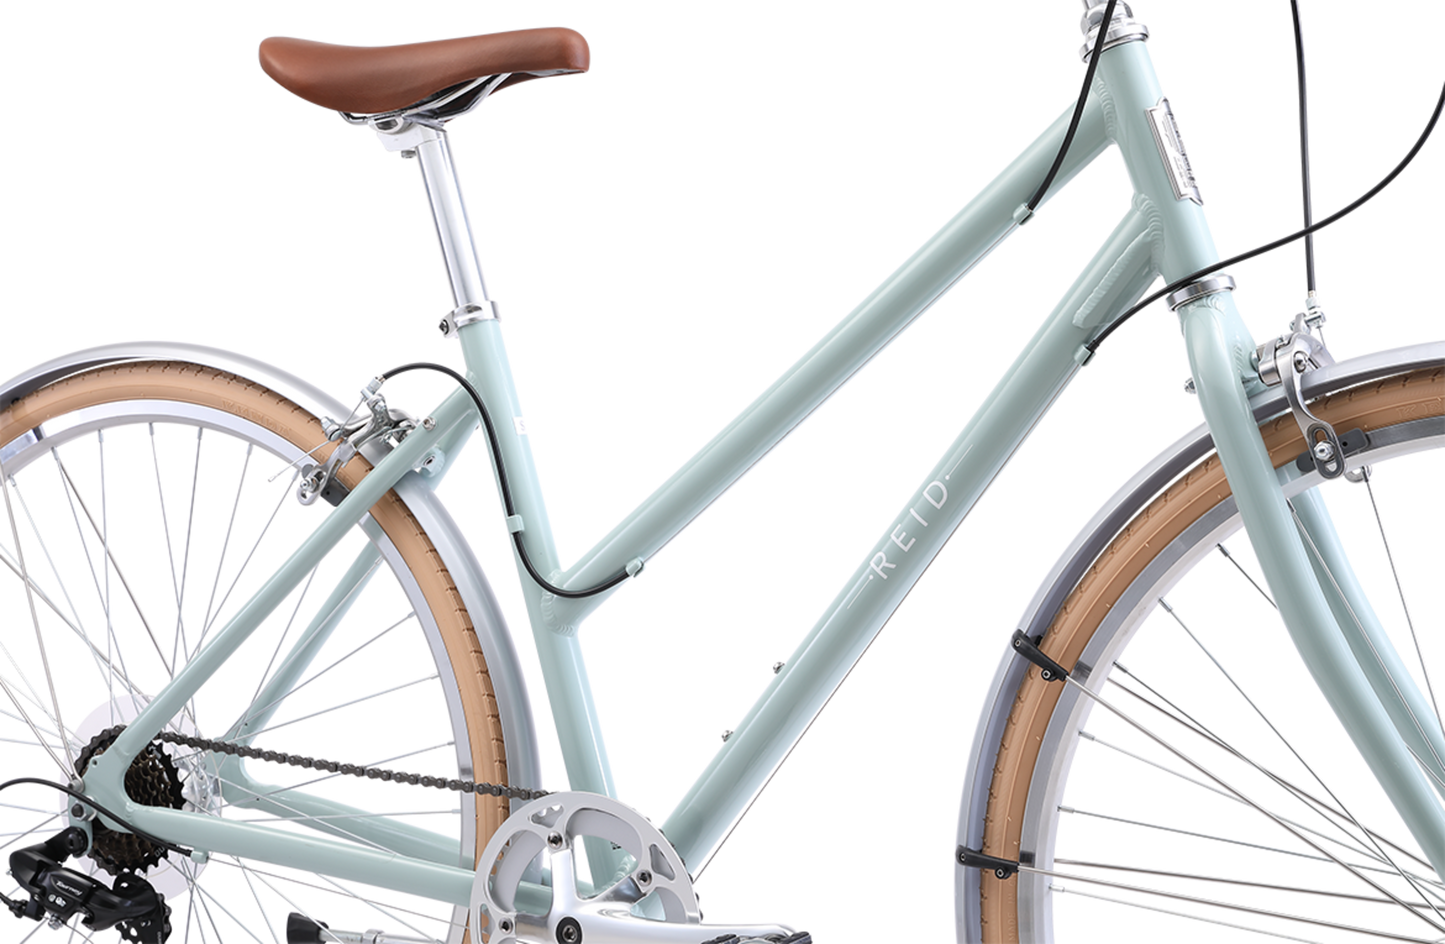 Ladies Esprit Superlite Vintage bike in Sage showing Reid logo on the downtube from Reid Cycles Australia